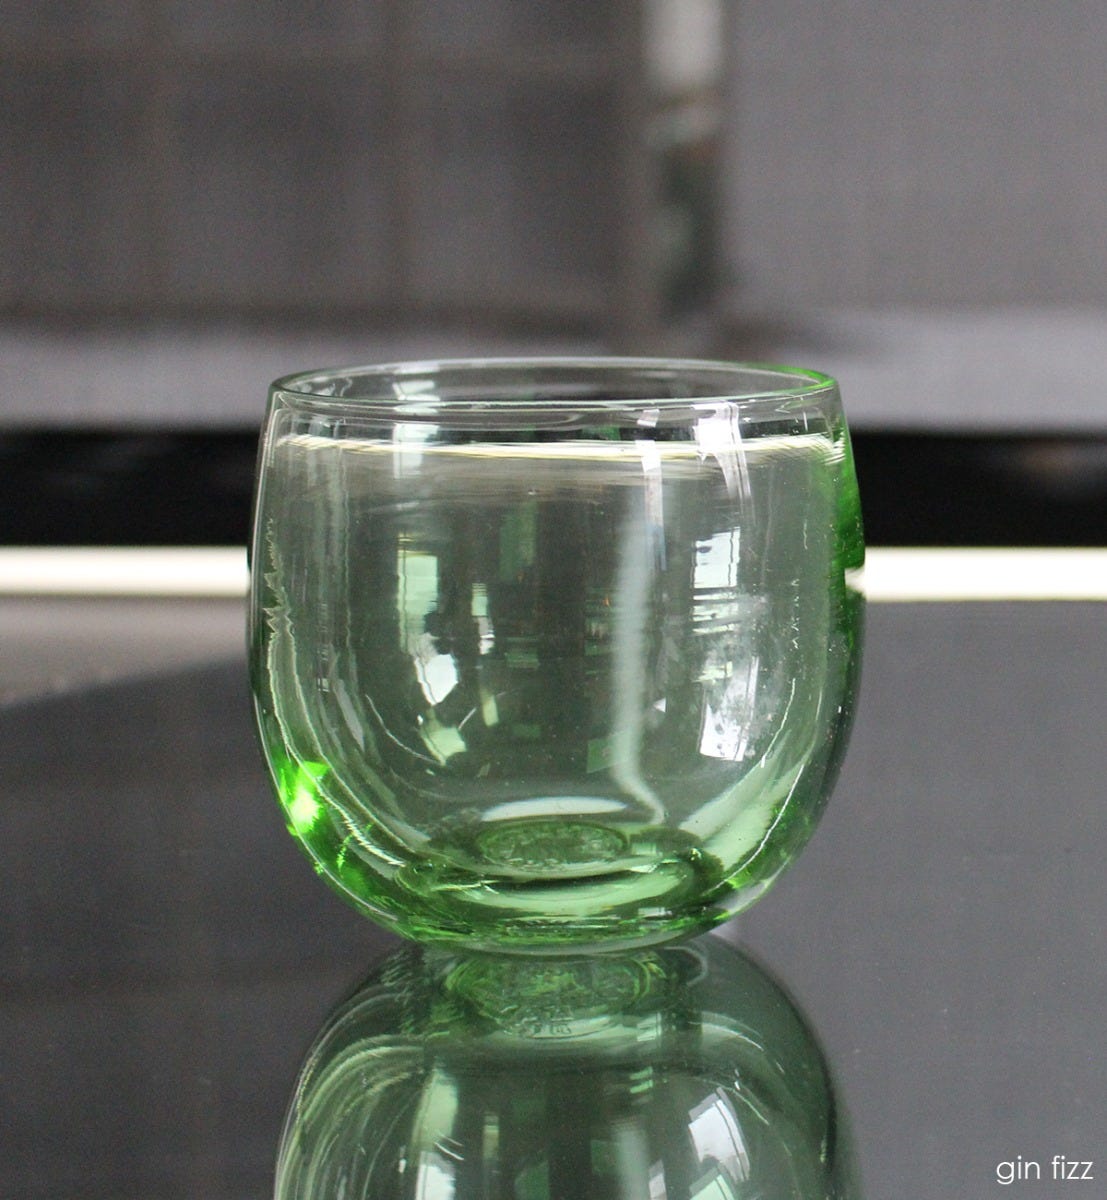 gin fizz drinker, transparent light green hand-blown drinking glass.